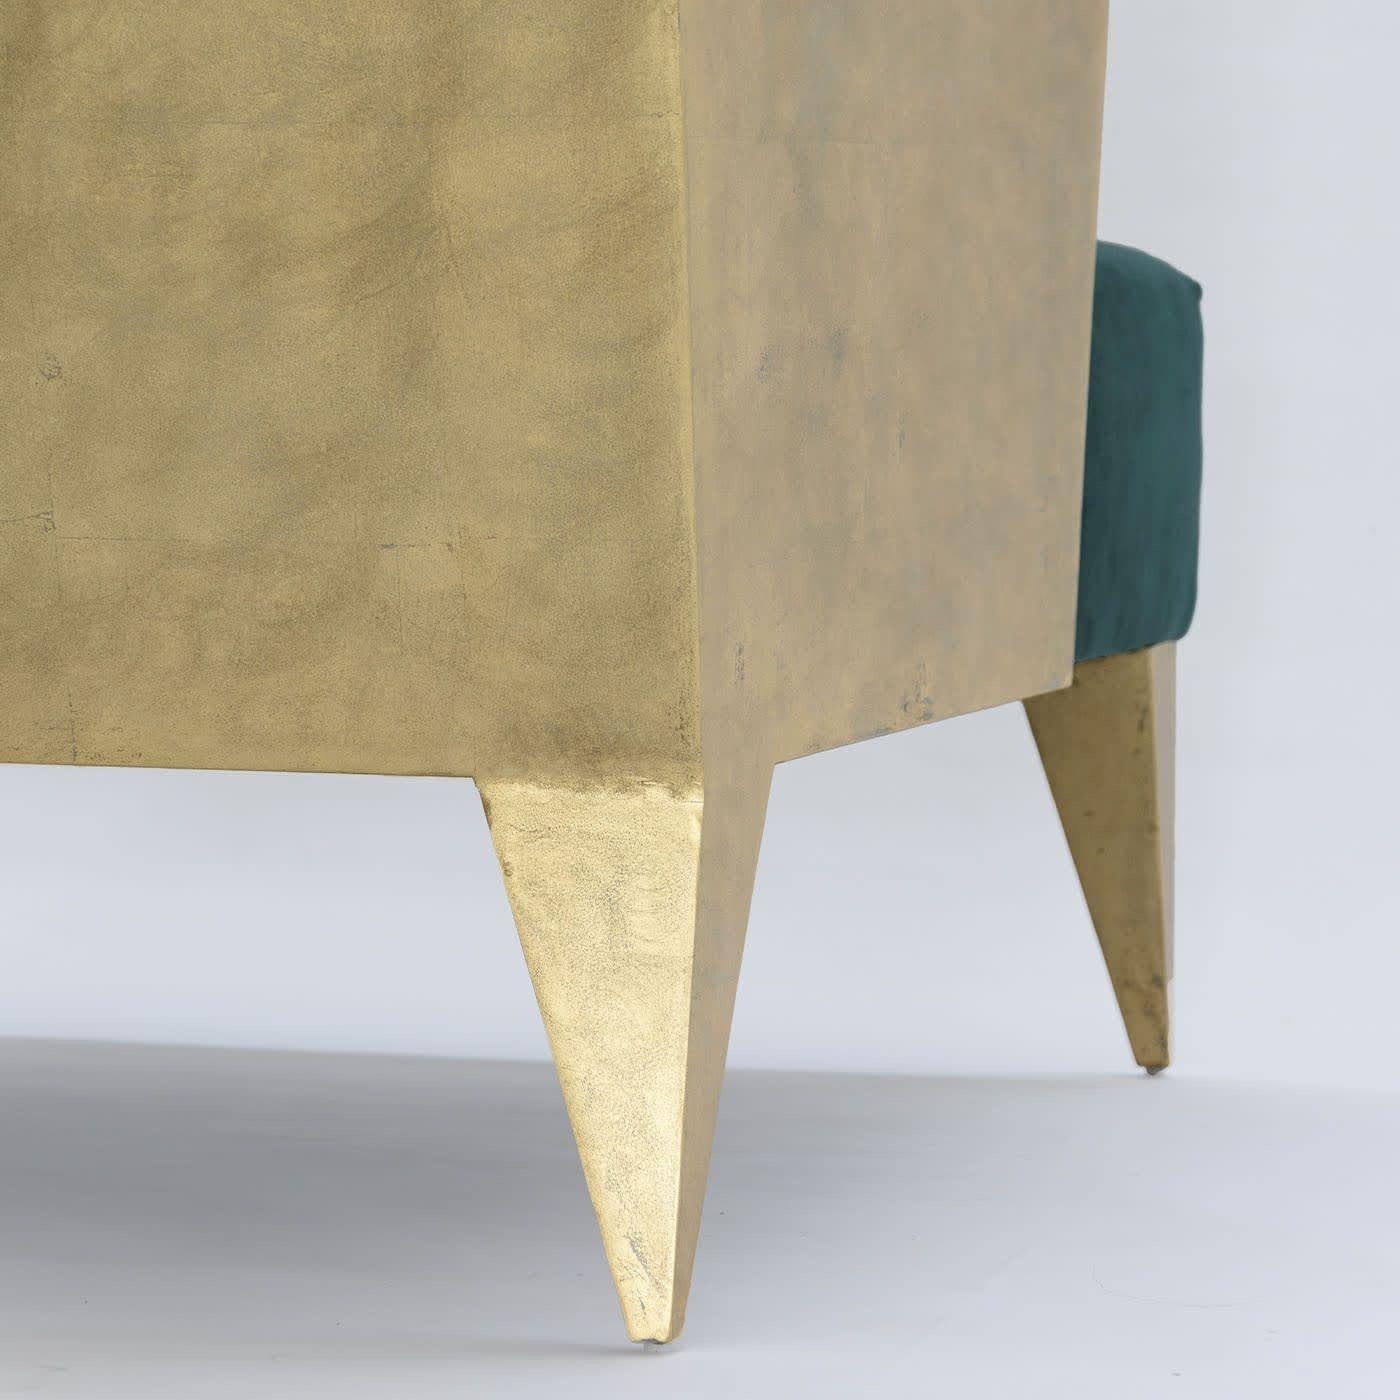 Strenge Profile treffen in diesem Sessel, in dem edle Farben und hochwertige MATERIALIEN triumphieren, auf eine besonders großzügige Polsterung. Die mit natürlichem Pergament und Blattgold überzogene Holzstruktur mit ihren spitz zulaufenden Füßen